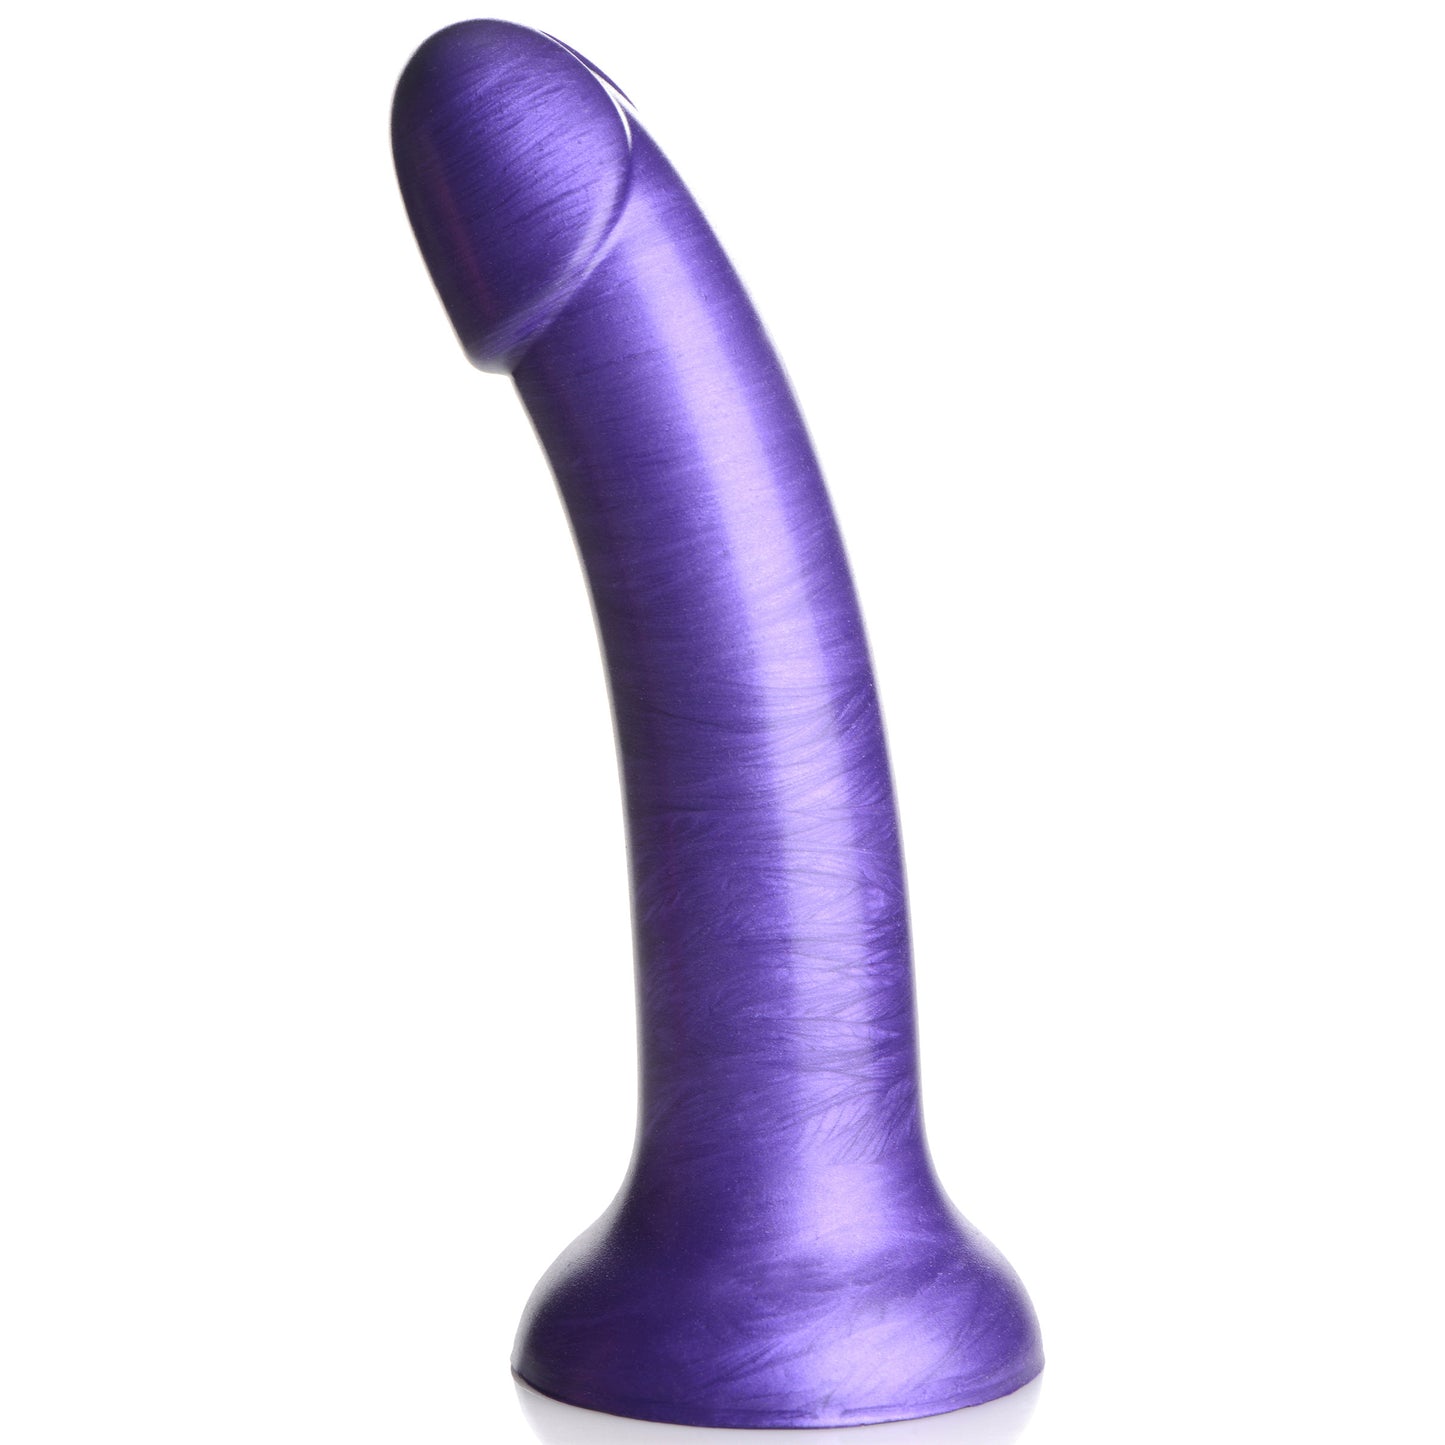 Metallic Silicone 7 Inch Dildo - Purple